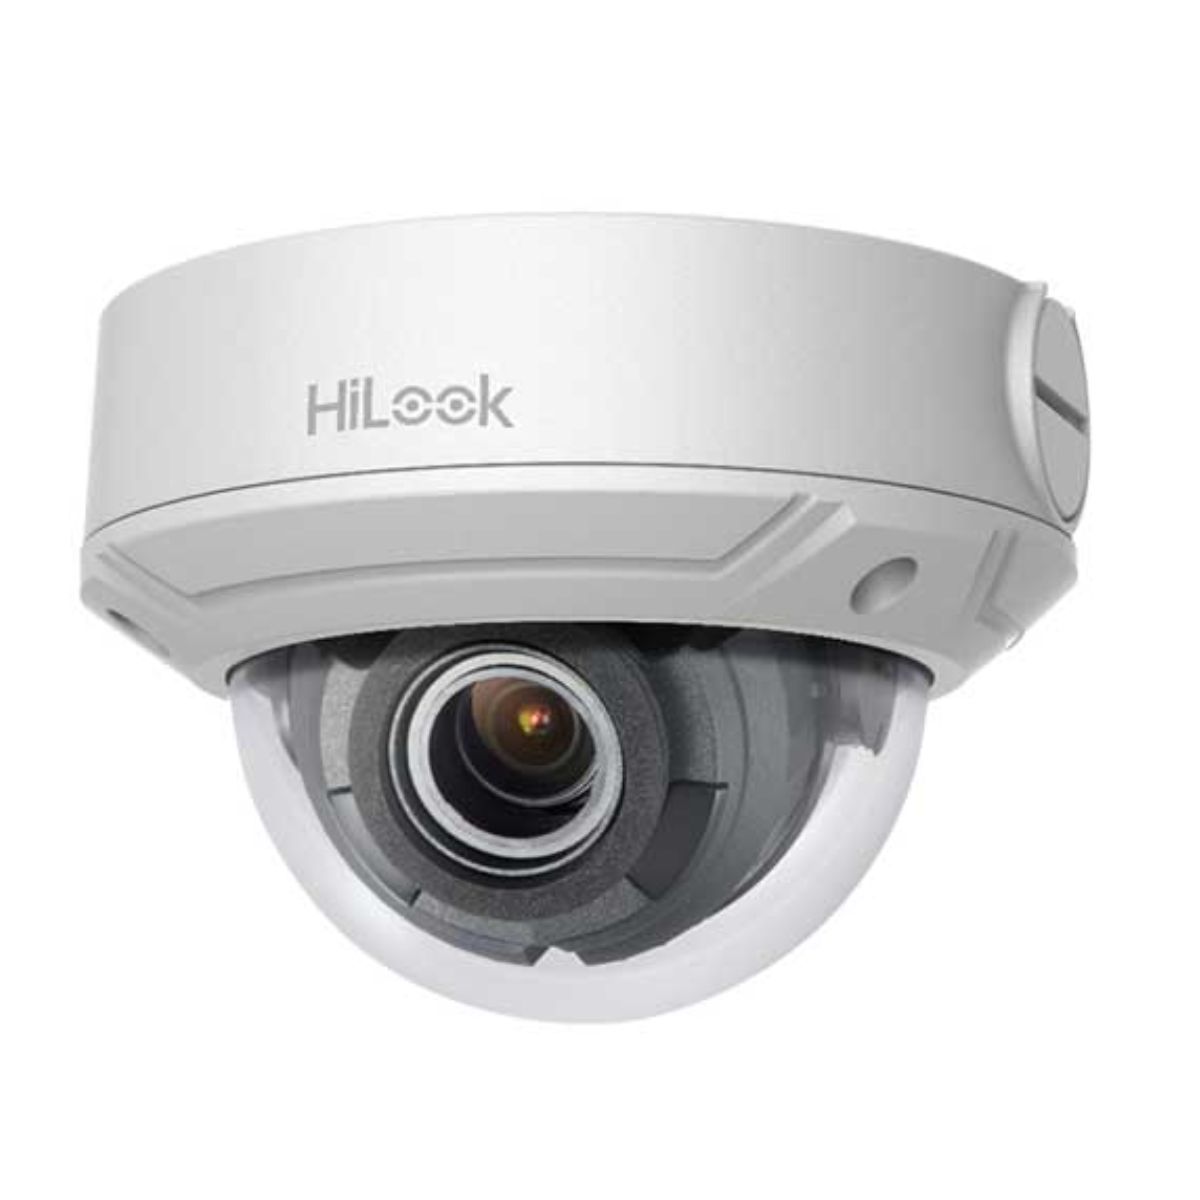 Camera Dome IP hồng ngoại Hilook IPC-D620H-Z 2MP 1080P, hồng ngoại 30m, chế độ ngày đêm